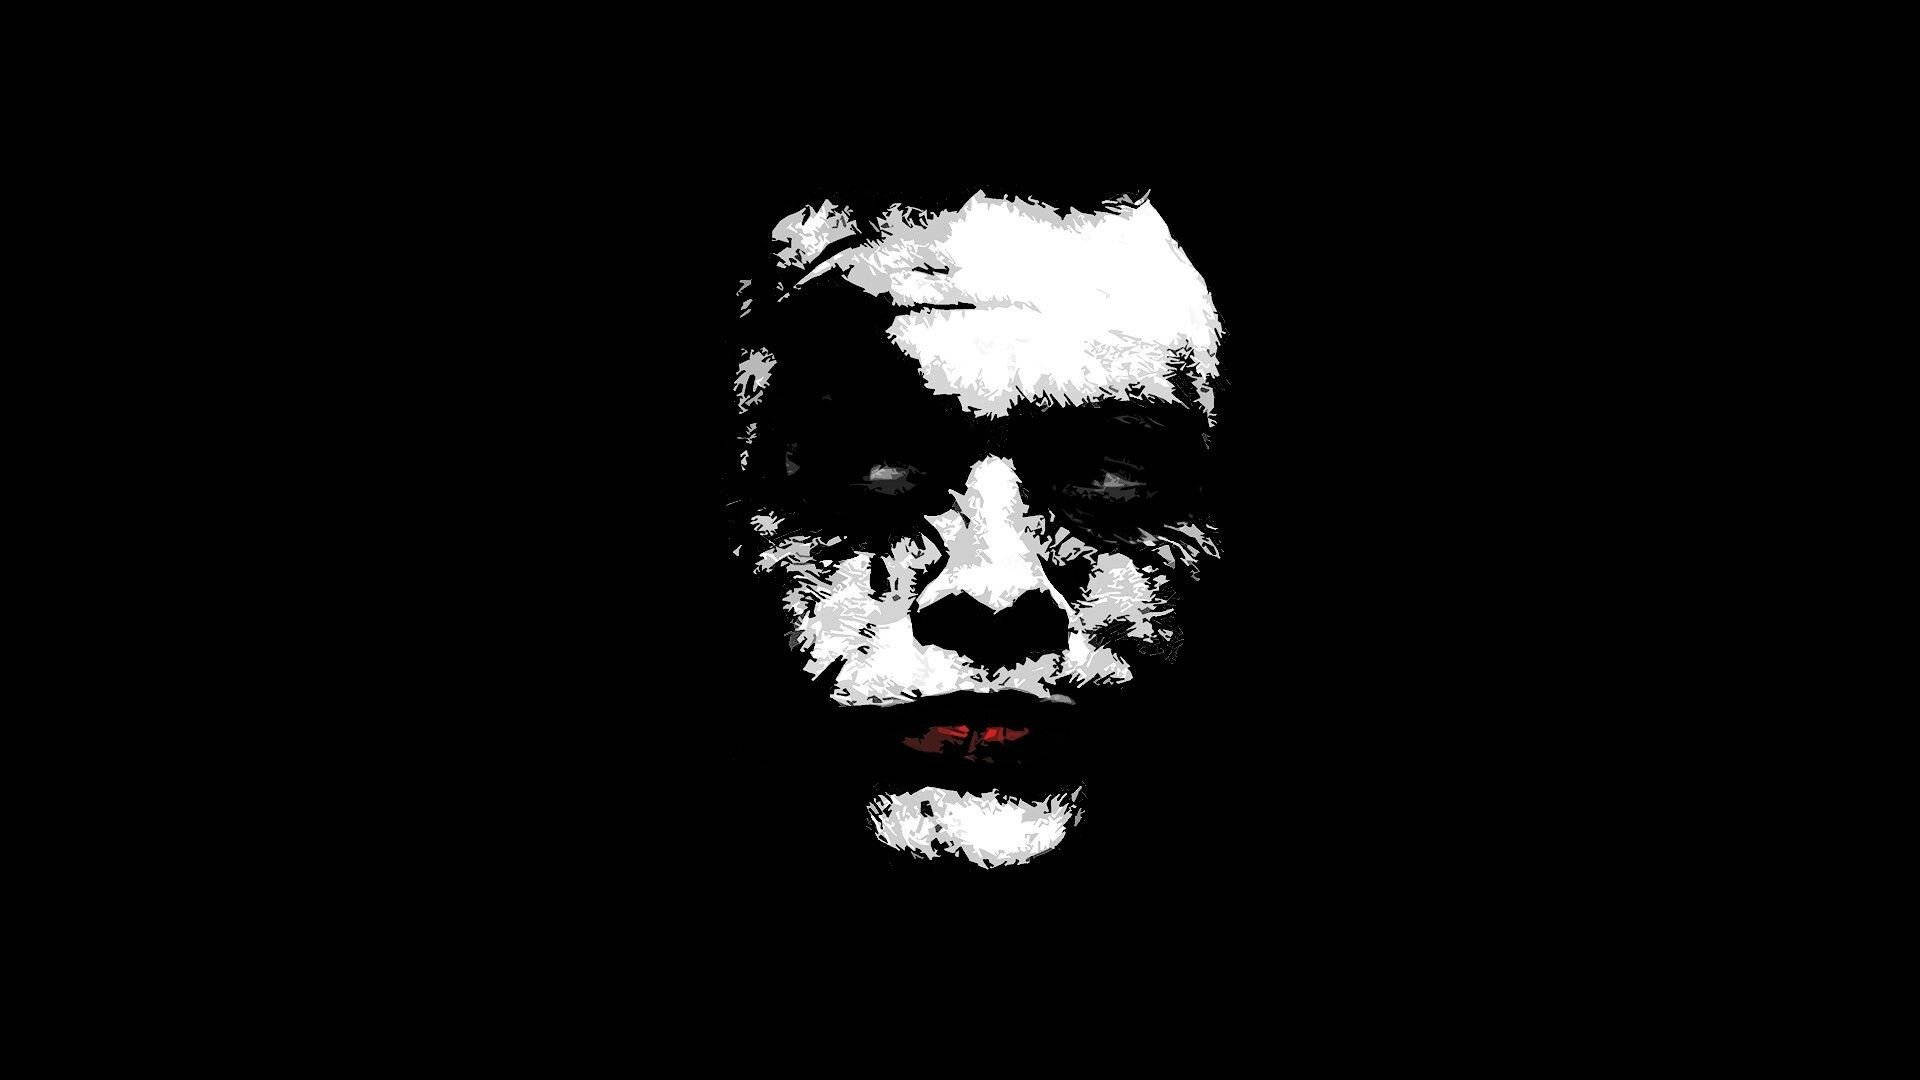 Black And White Joker Heath Ledger Portrait Wallpaper